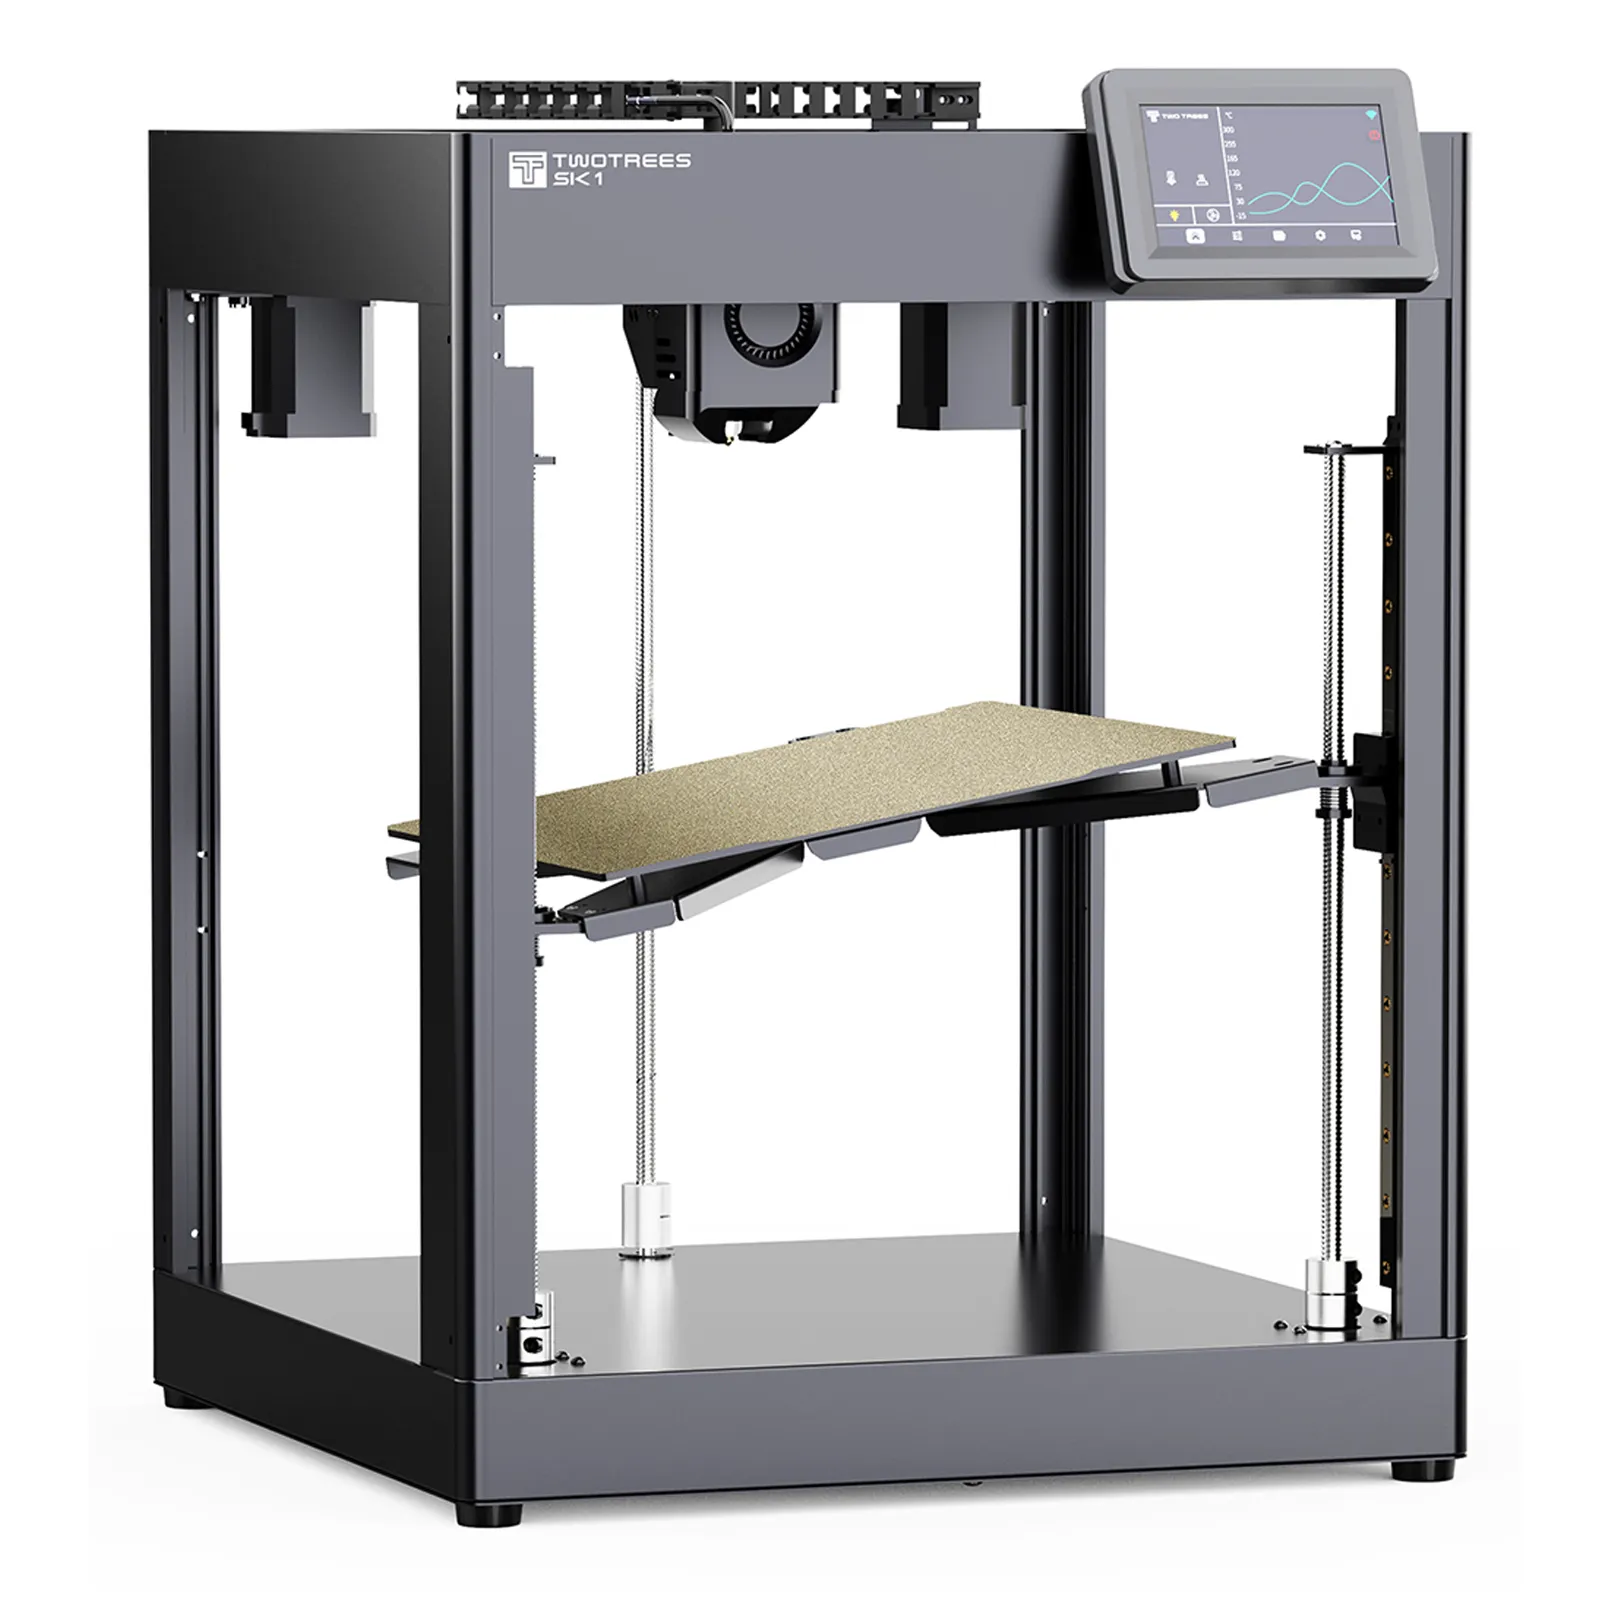 TWOTREES SK1 700 mm/s Klipper Nivelación automática Industri Impresora 3D industrial Precio de la máquina Impresora 3D de metal para impresoras 3D